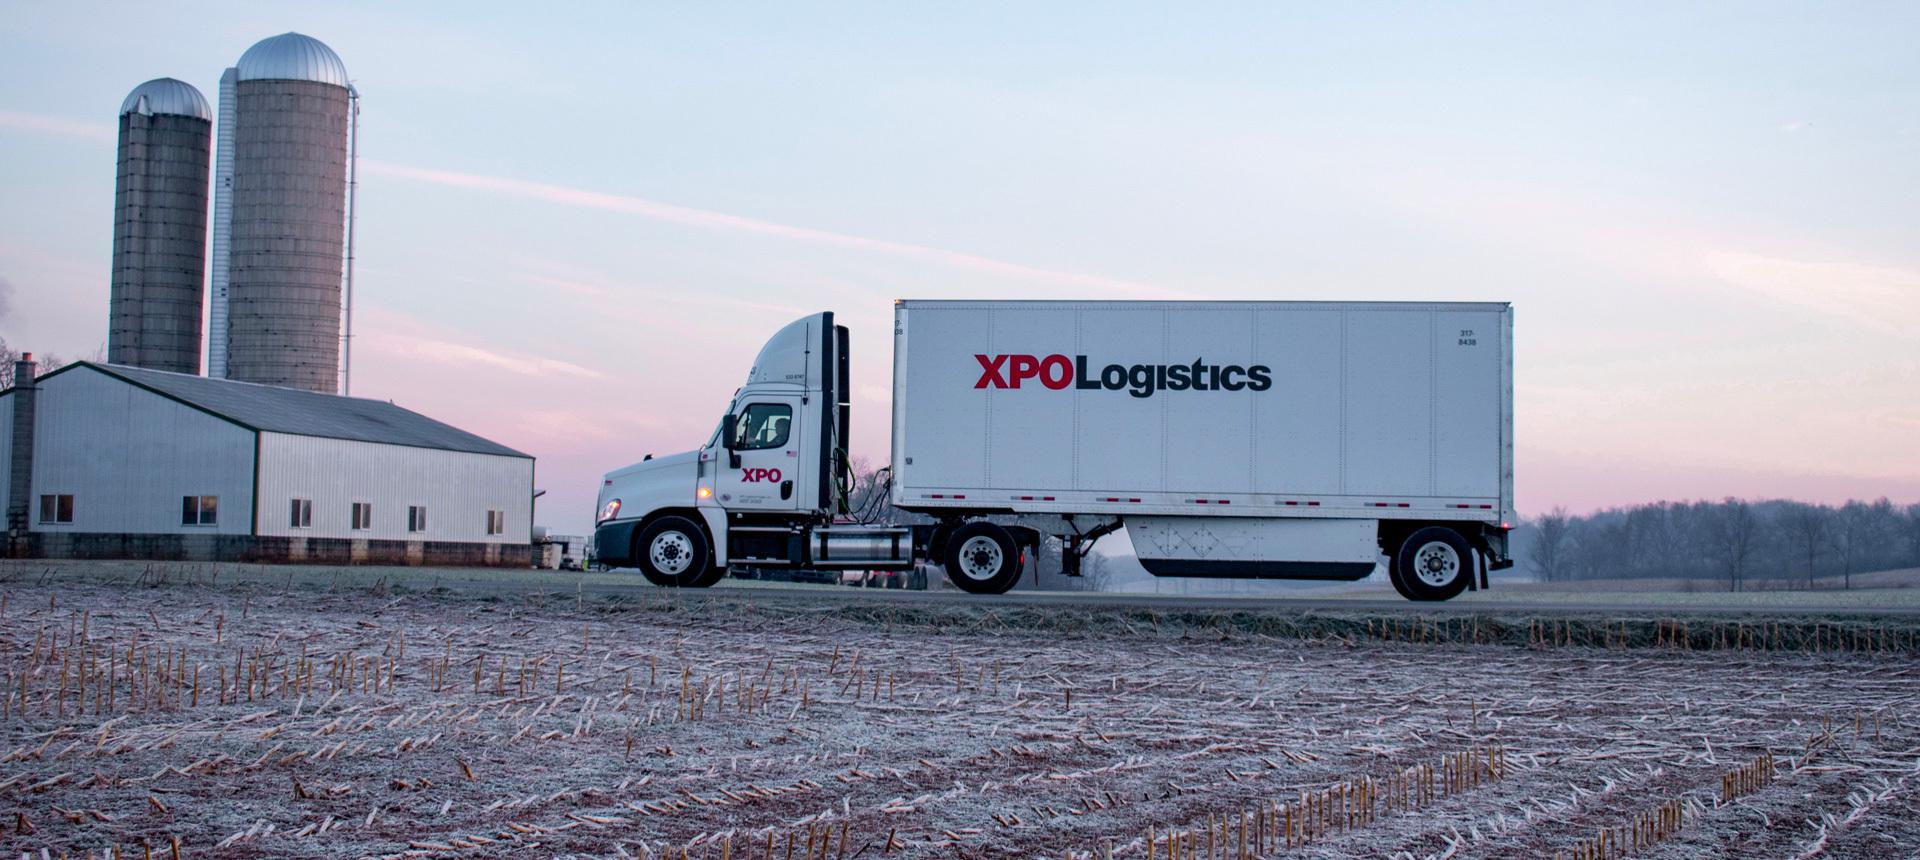 xpo logistics tracking a pickup